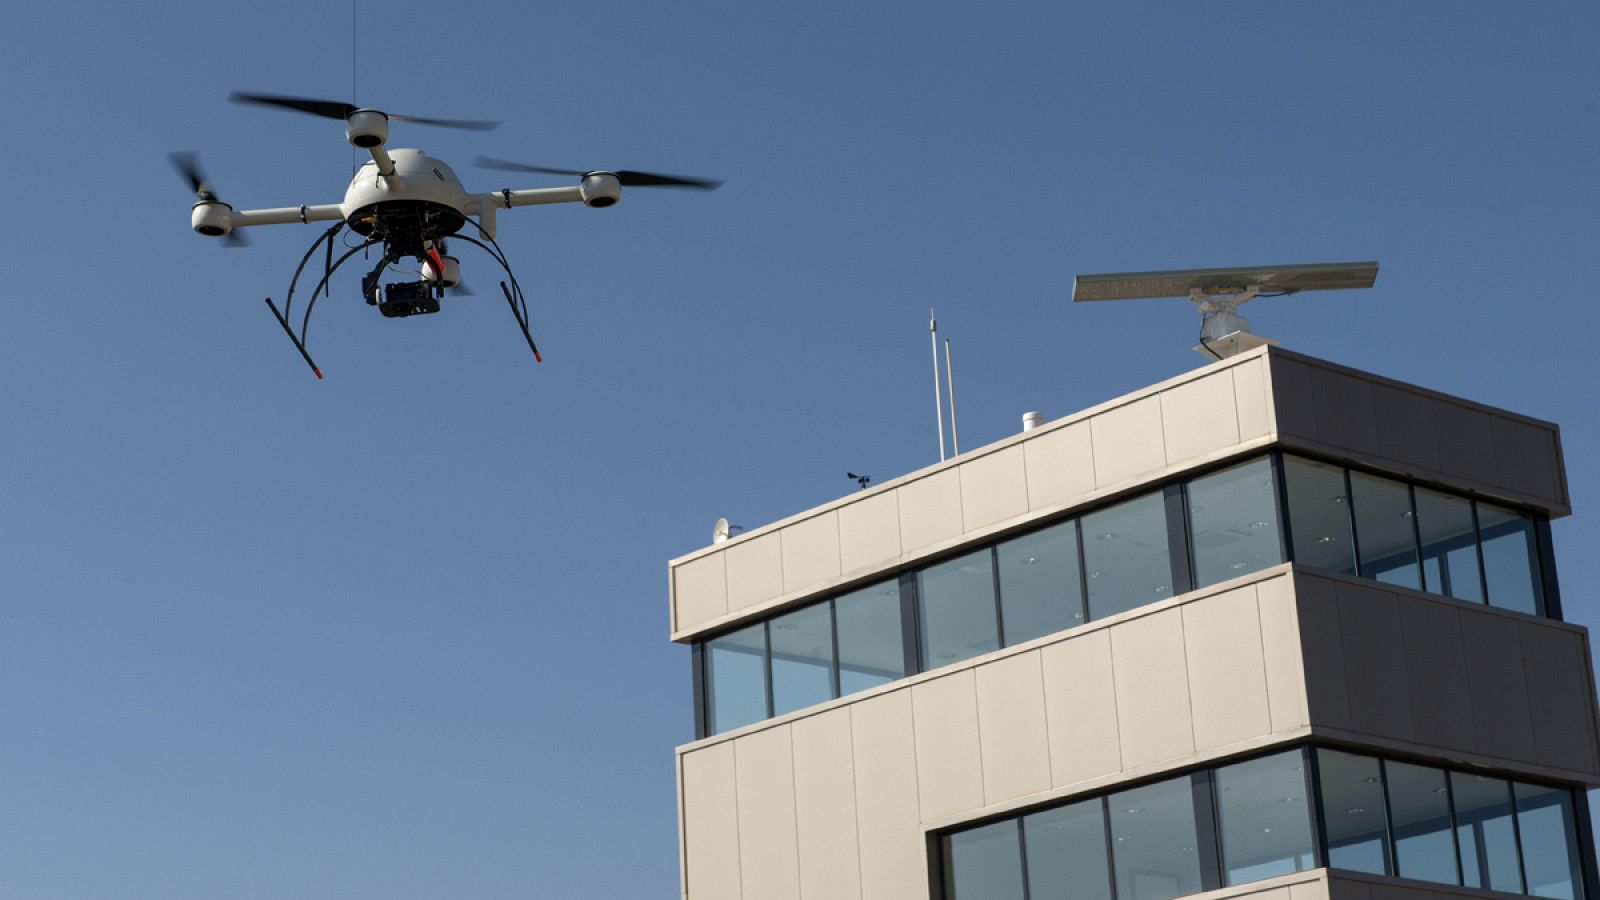 El modelo más habitual de drones es del de menos de 25 kilos al despegue.